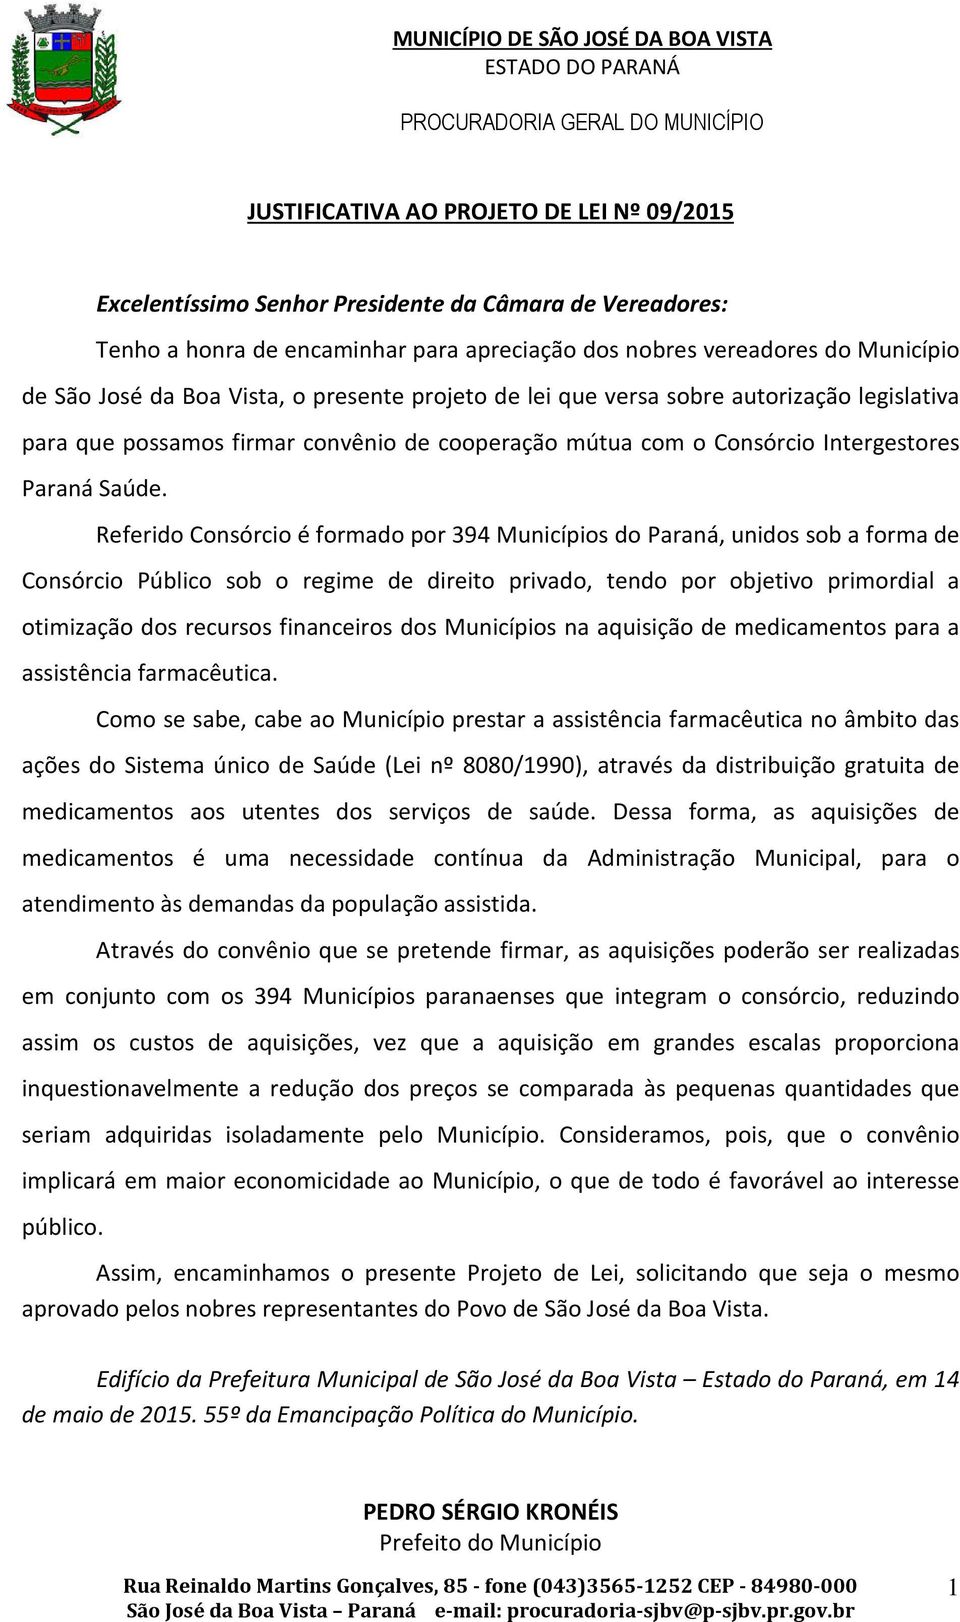 Referido Consórcio é formado por 394 Municípios do Paraná, unidos sob a forma de Consórcio Público sob o regime de direito privado, tendo por objetivo primordial a otimização dos recursos financeiros